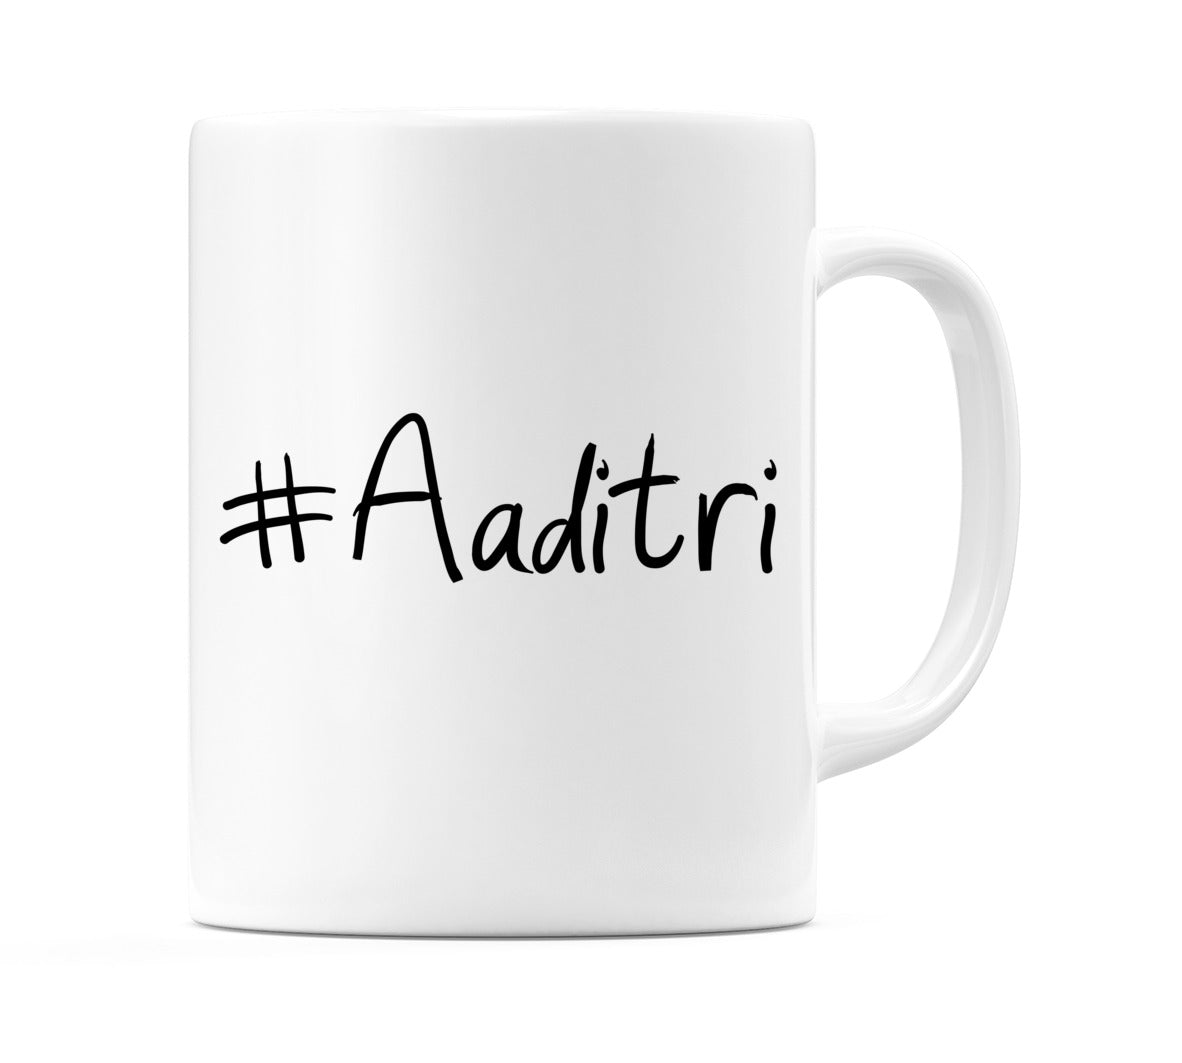 #Aaditri Mug